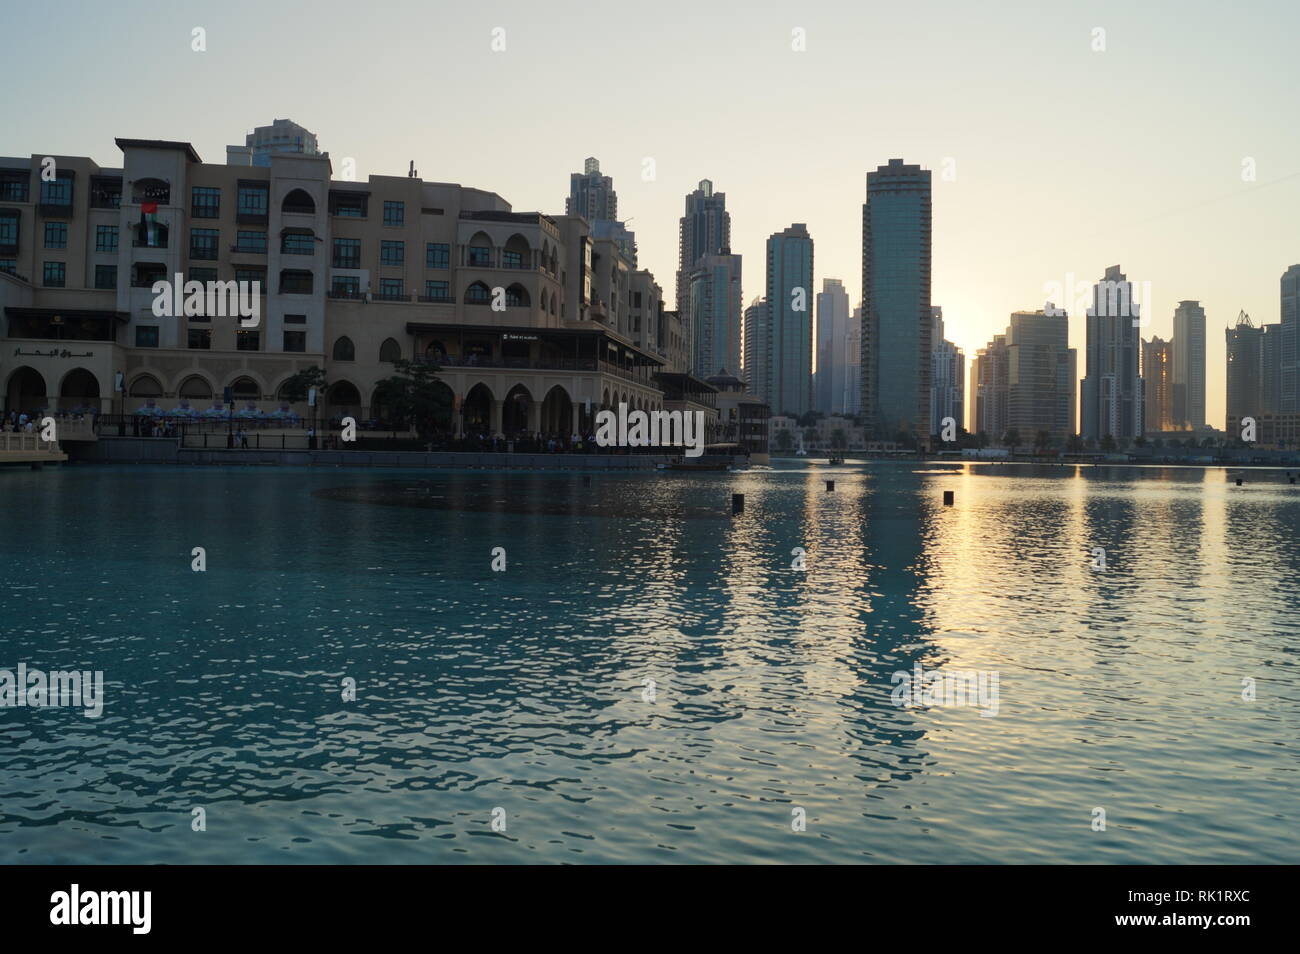 The Dubai Fountain - United Arab Emirates Stock Photo